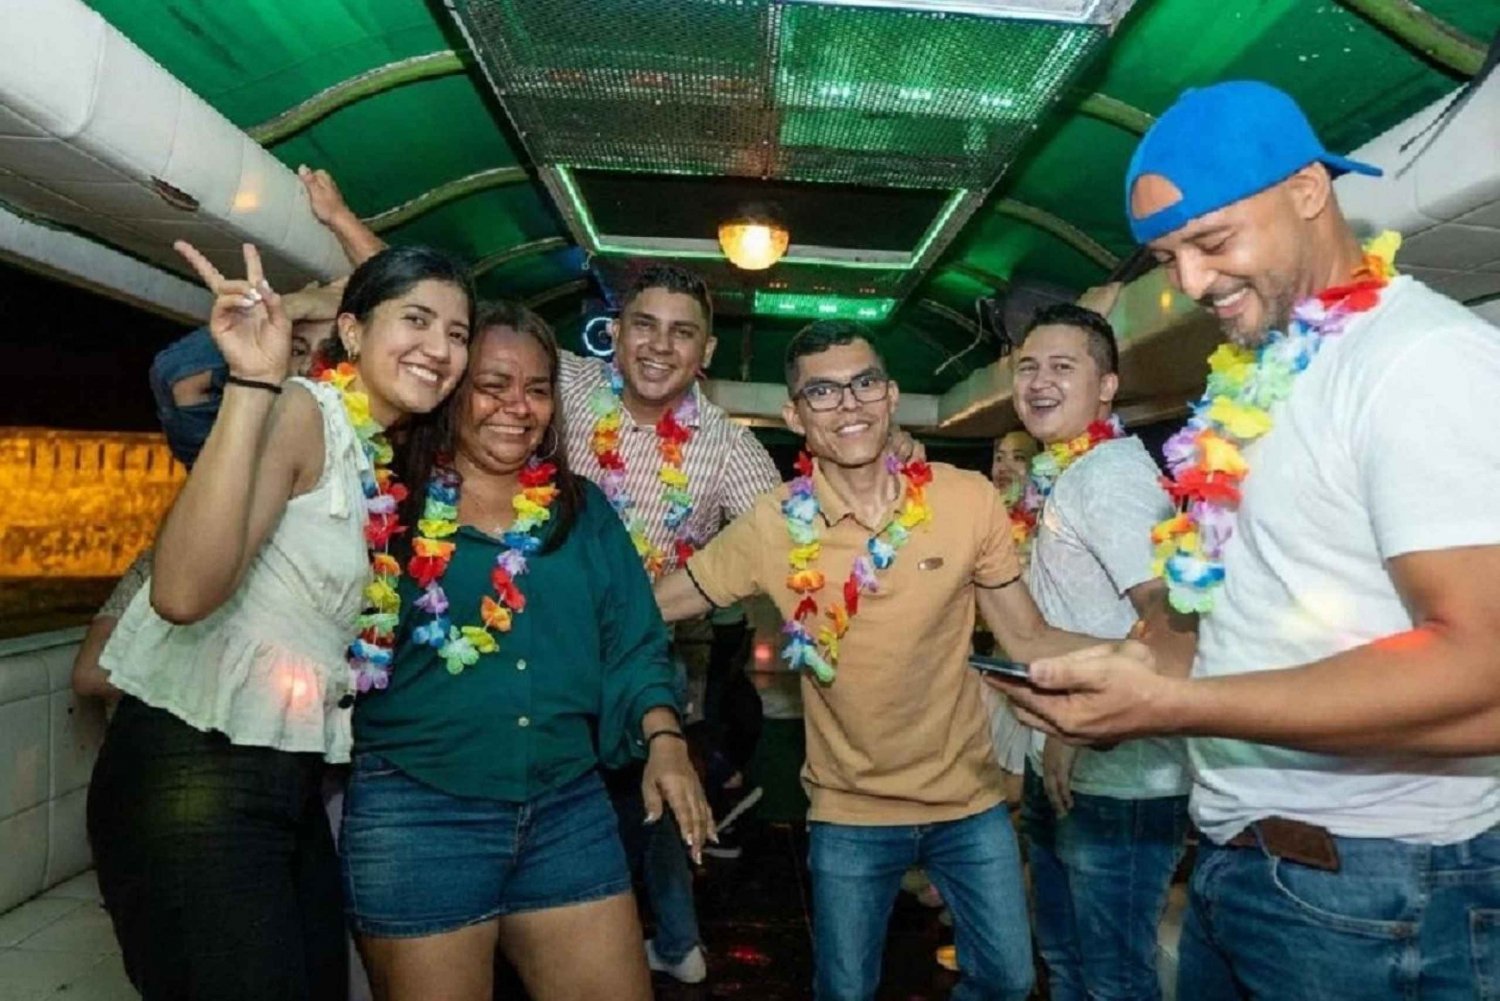 Cartagena: Recorre la ciudad de rumba en un autobús típico +licor